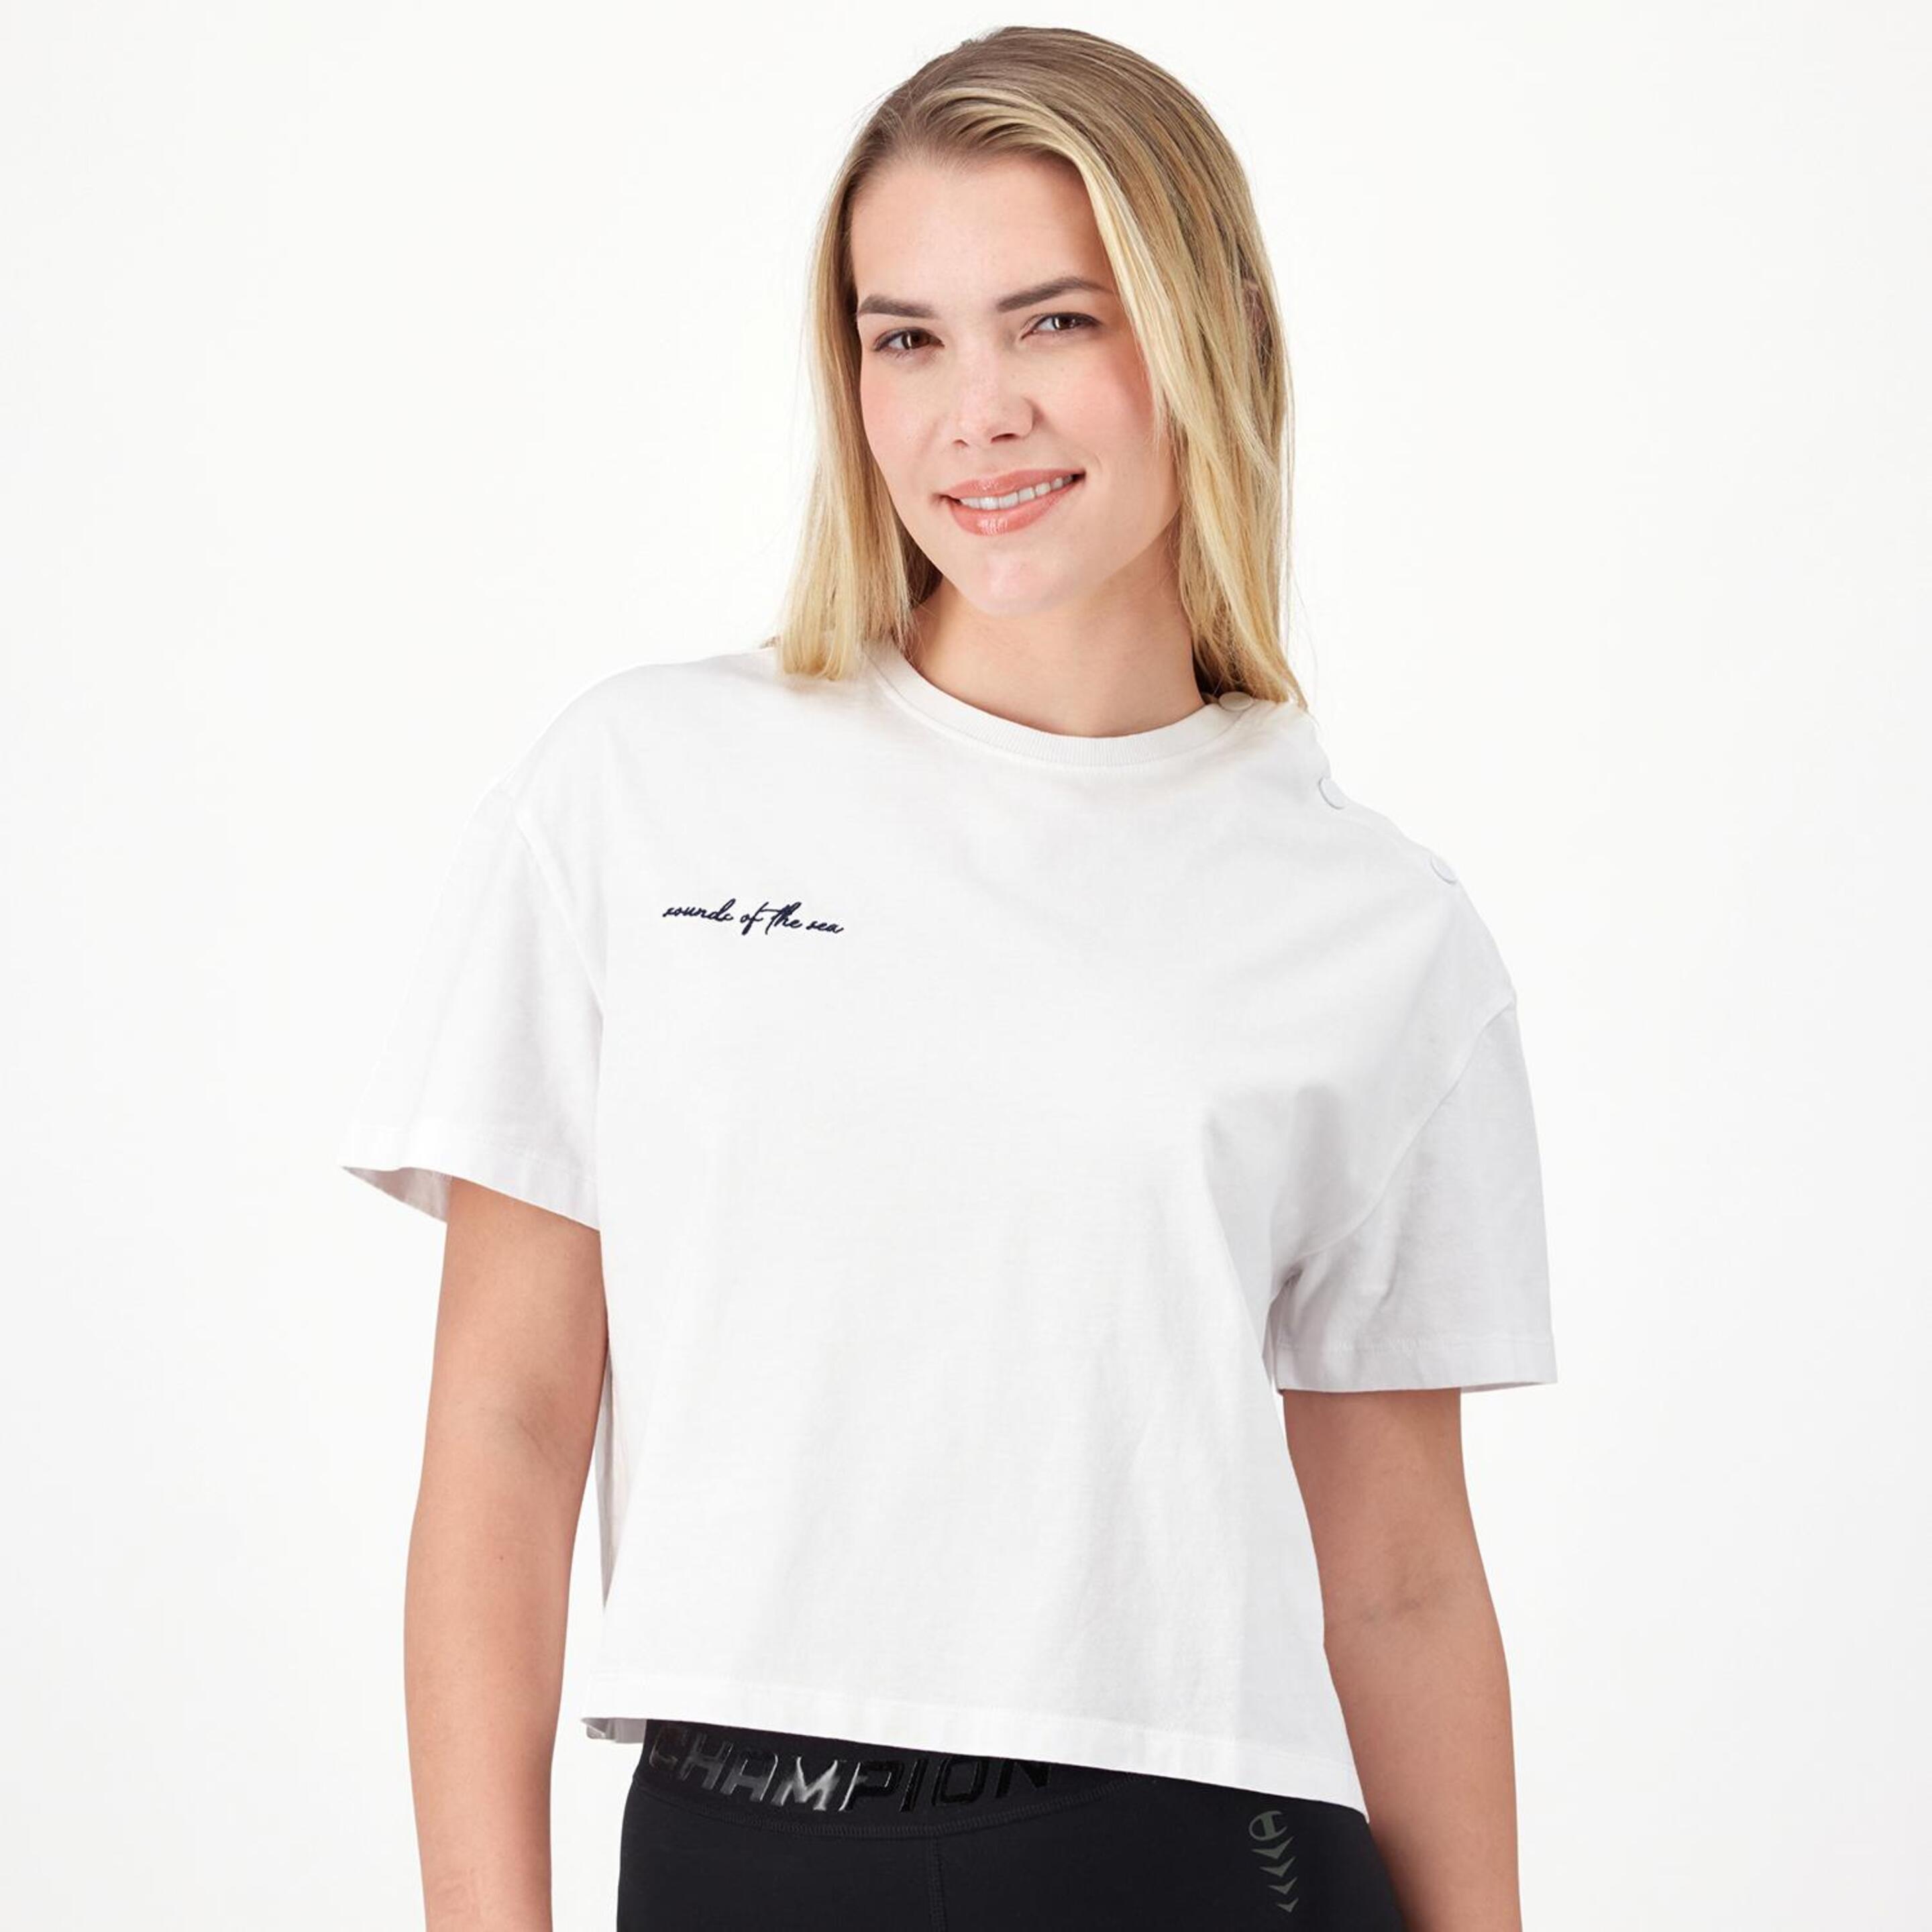 Silver Nautic 2 - blanco - Camiseta Mujer